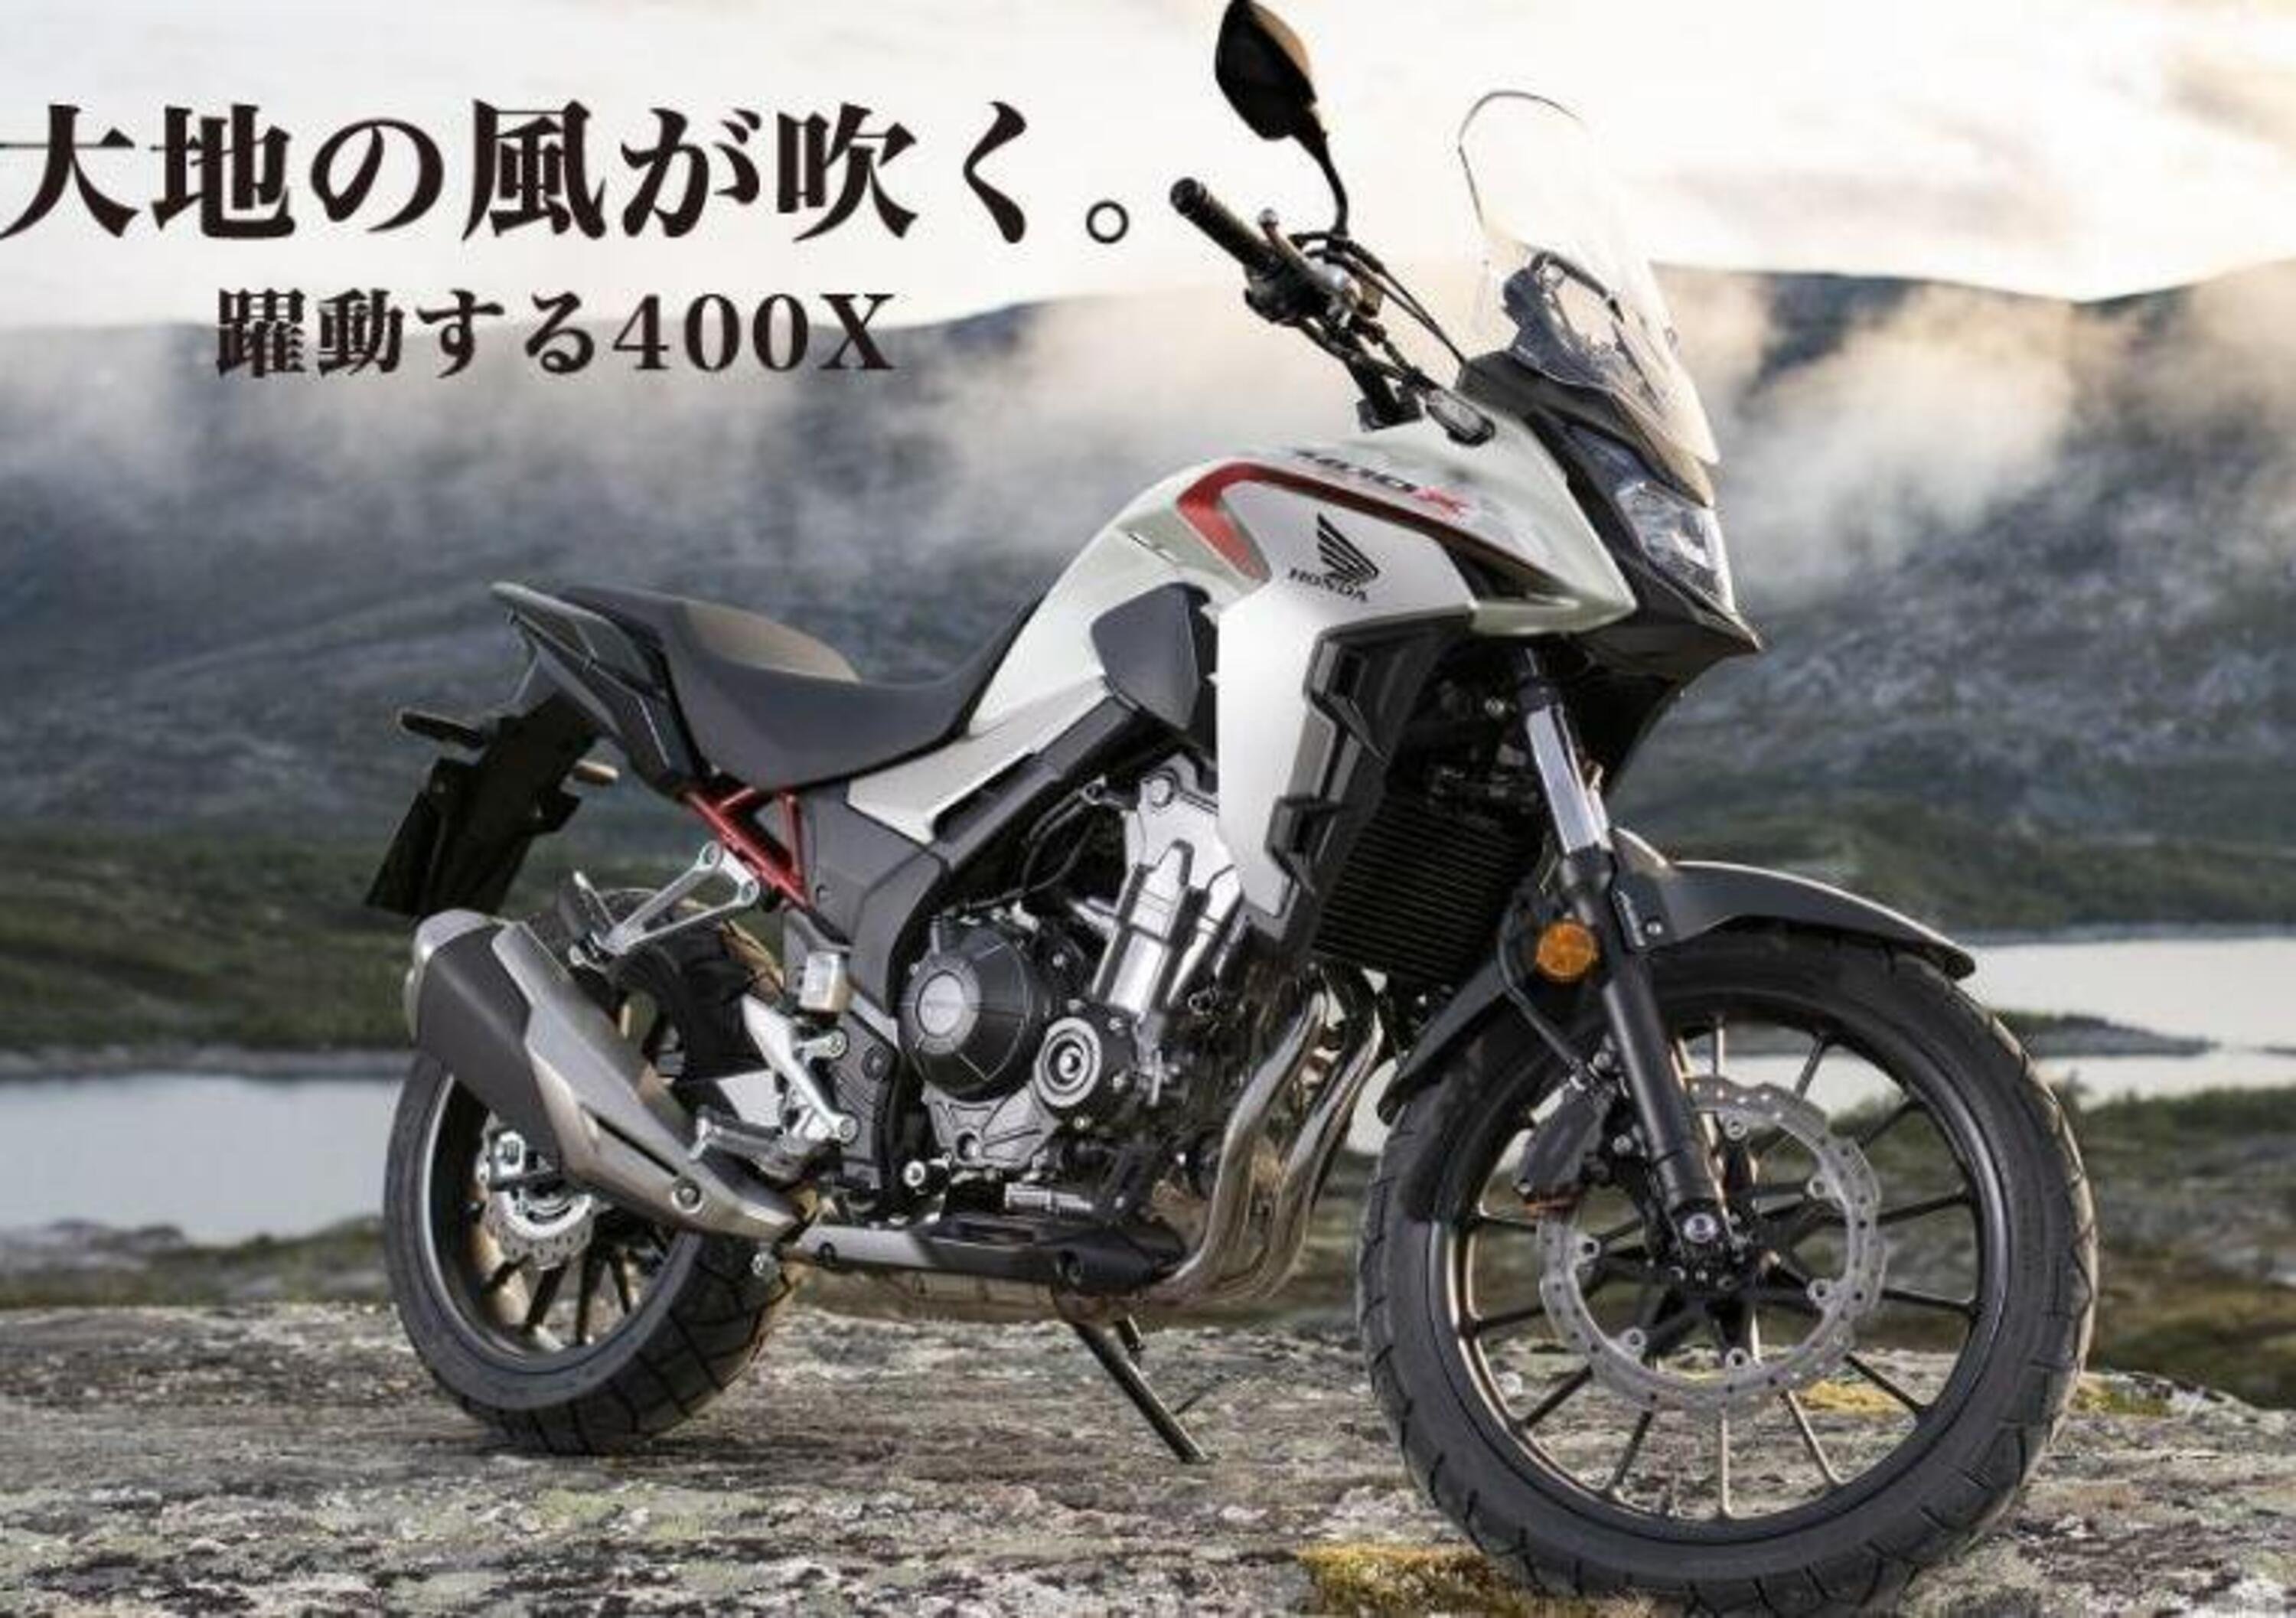 Il 2020 sar&agrave; l&#039;anno nero per la moto in Giappone?